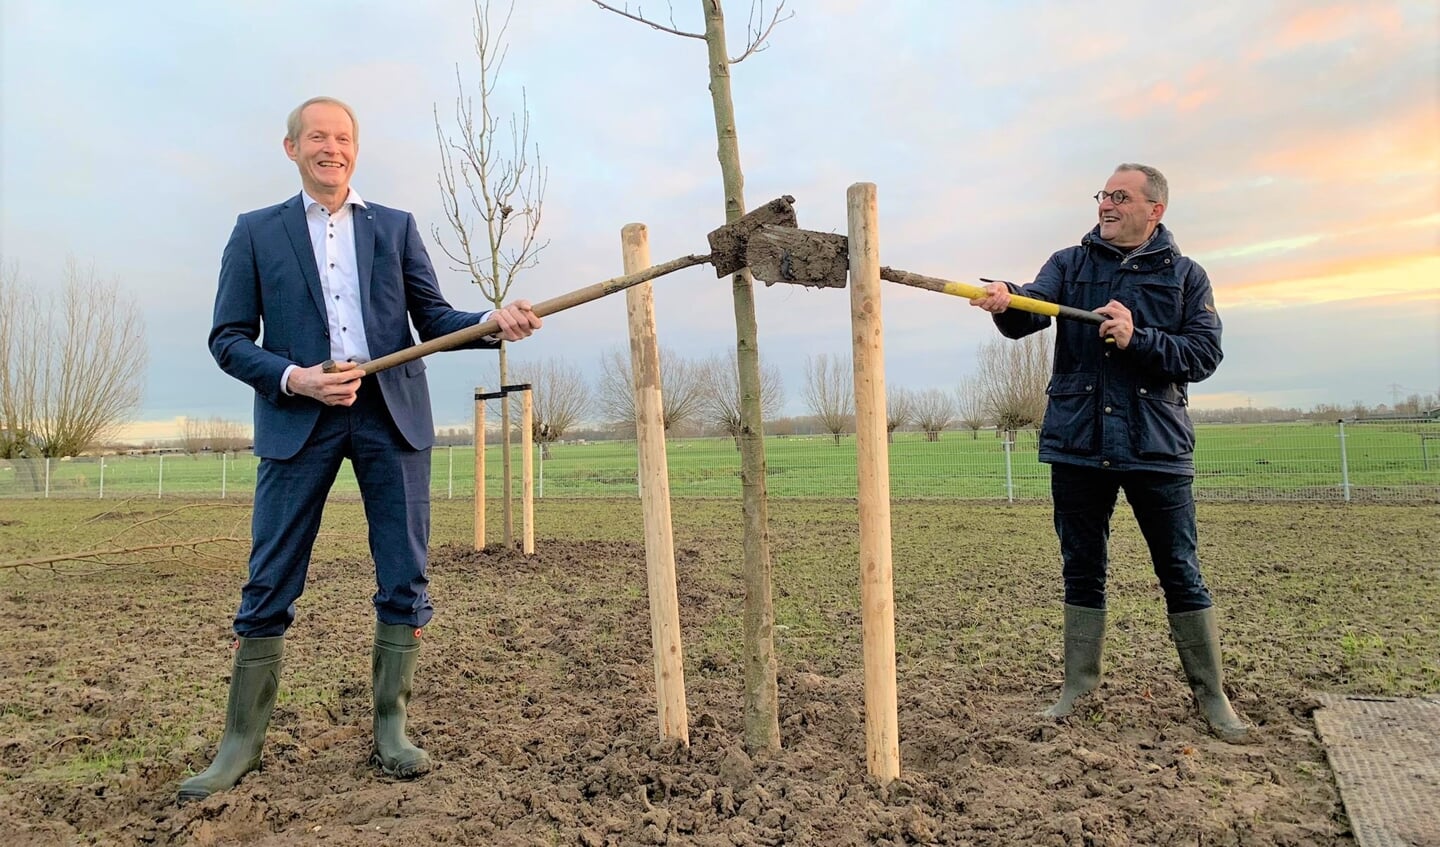 • De eerste bomen werden geplant door de wethouders Johan Quik en Teunis Jacob Slob.